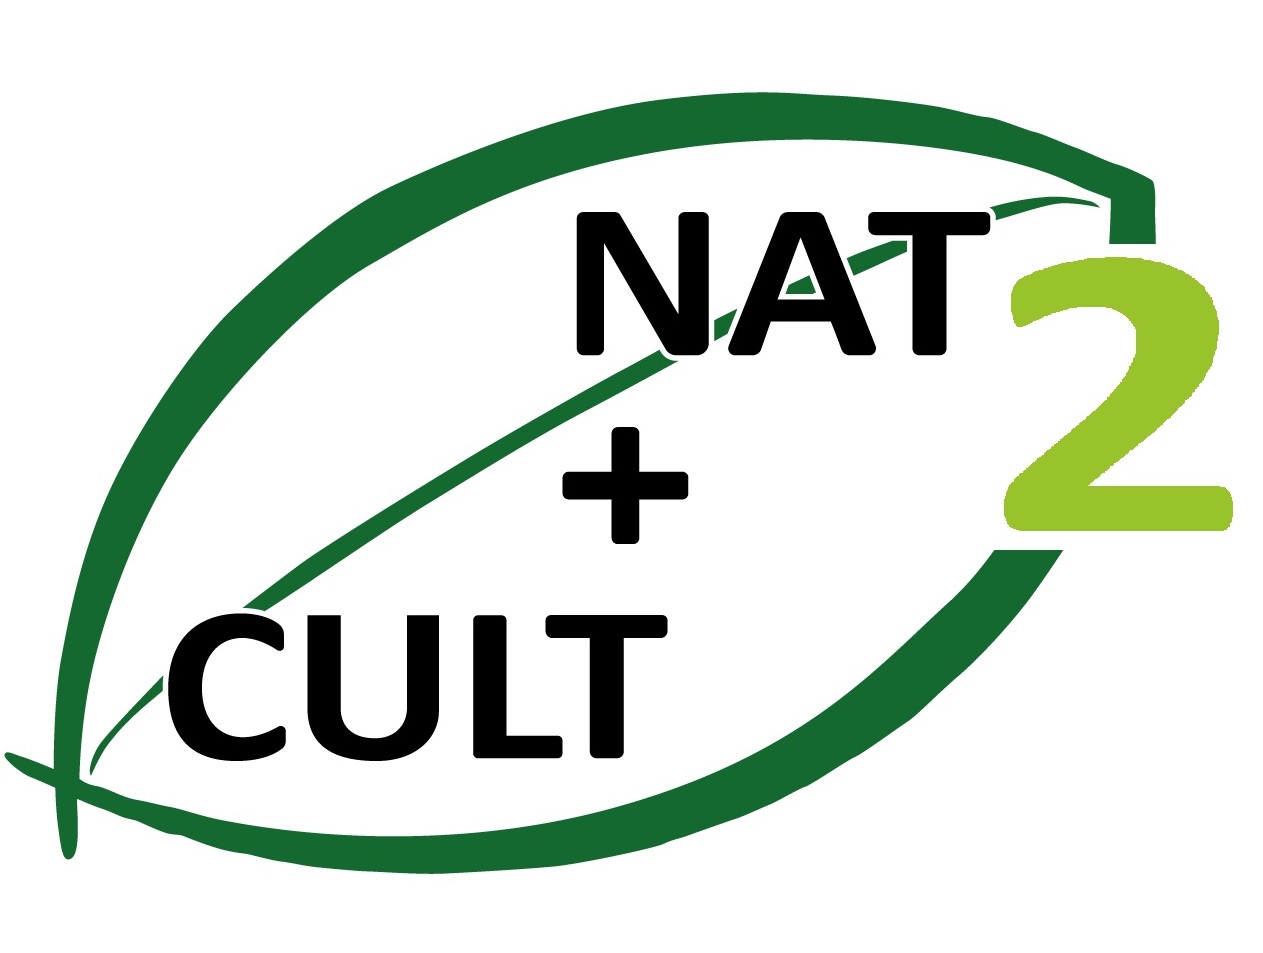 Nat cult 2